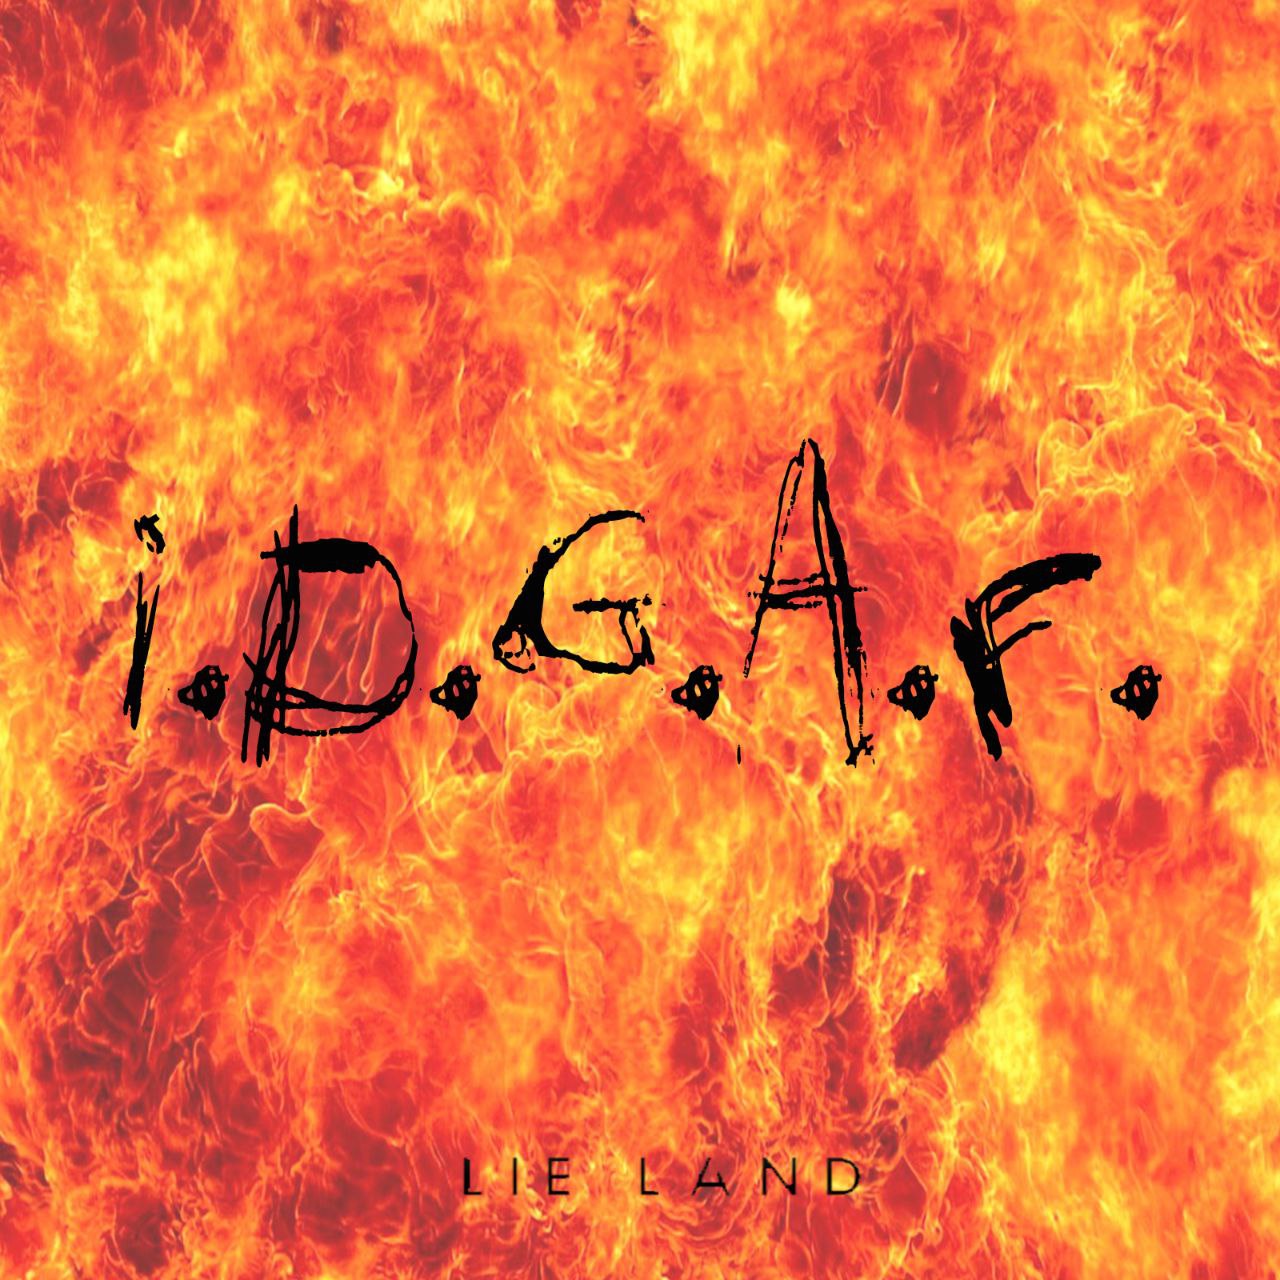 Esce oggi il singolo “I.D.G.A.F.” e con esso, il ritorno dei Lie Land